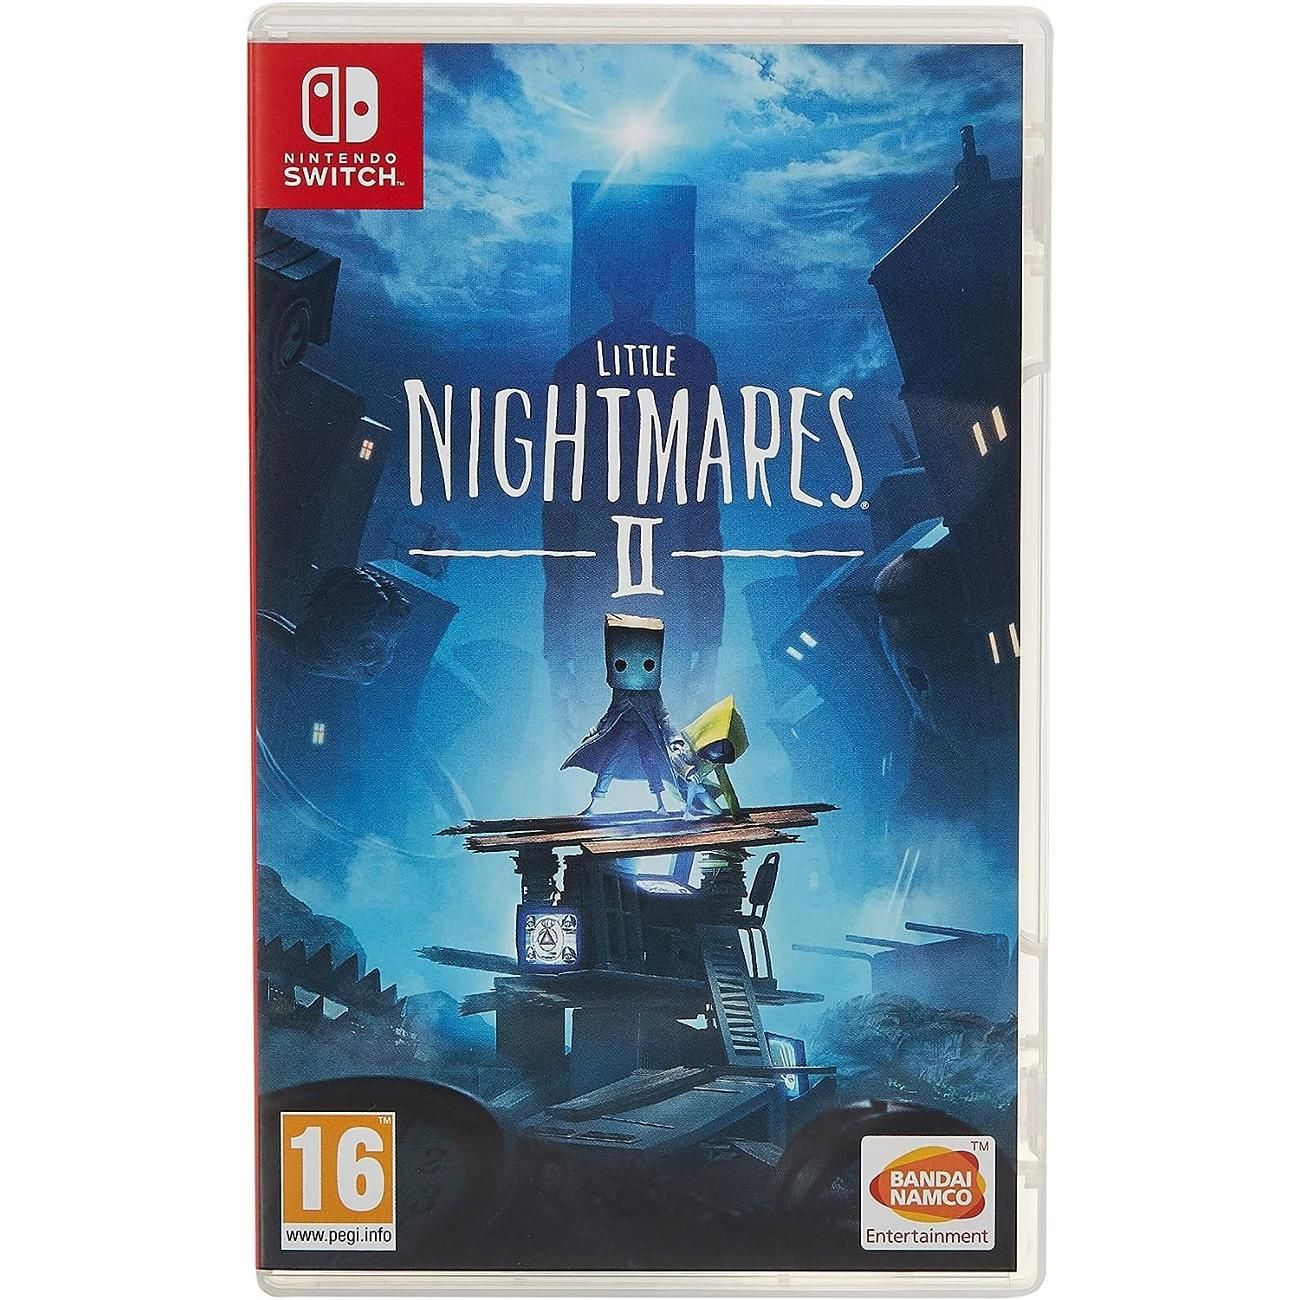 Nightmares Nintendo Switch Cover. Little nightmares nintendo